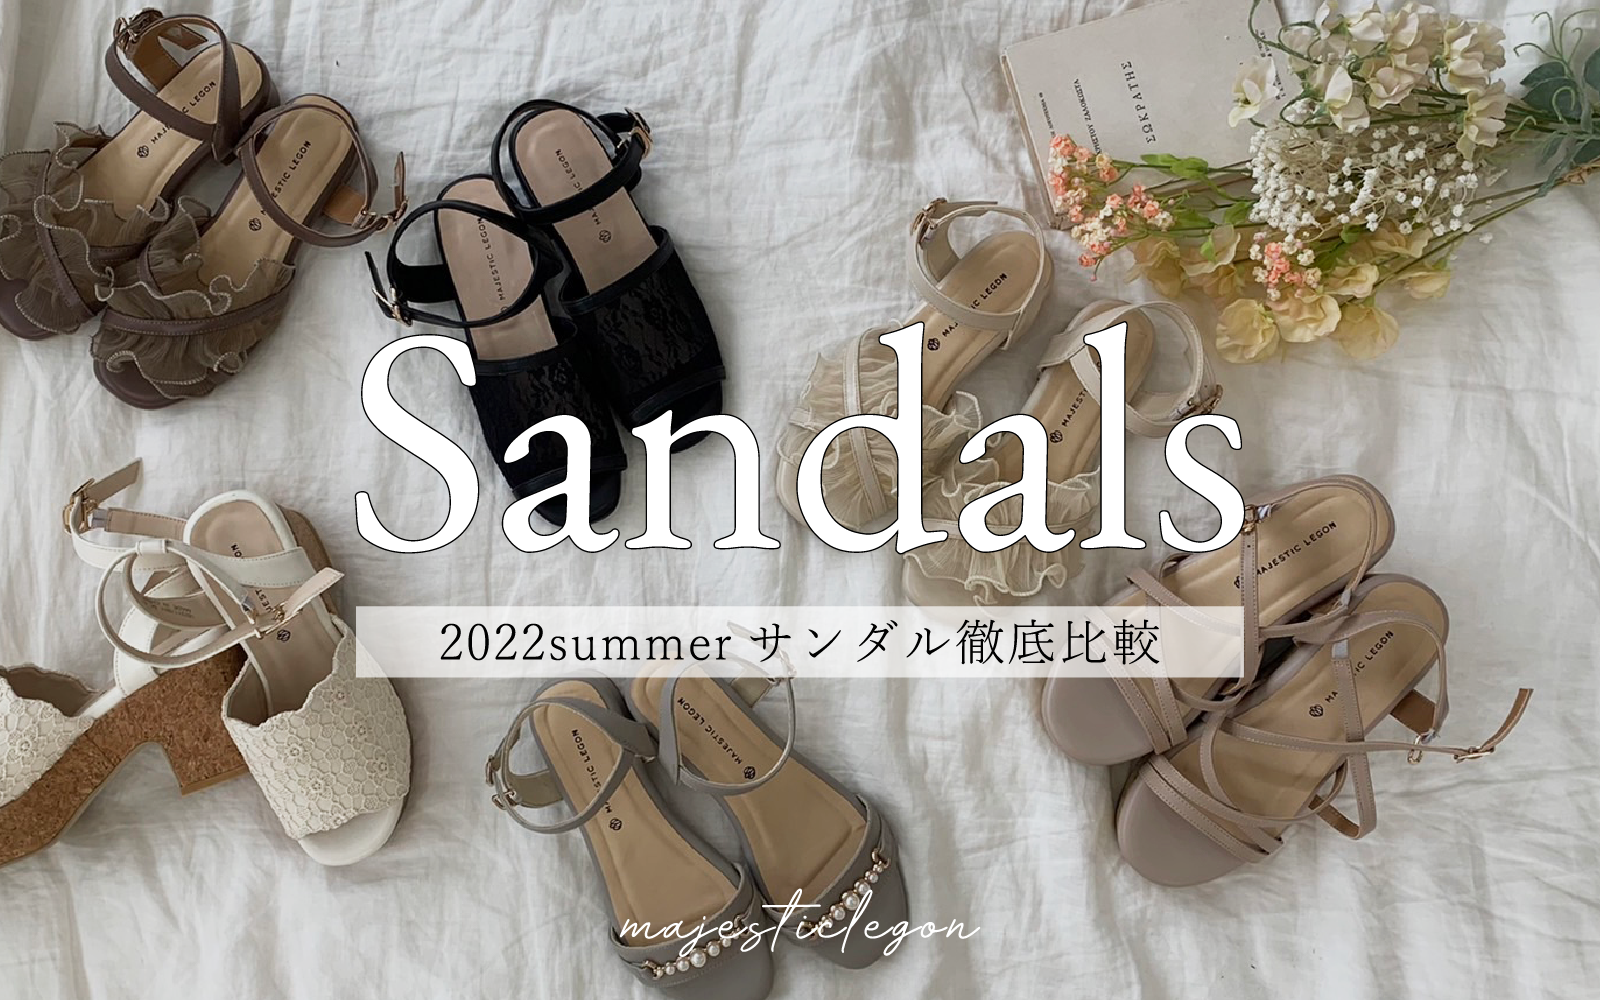 2022 summer sandals collection👠～デザイナーのこだわりポイント大公開～